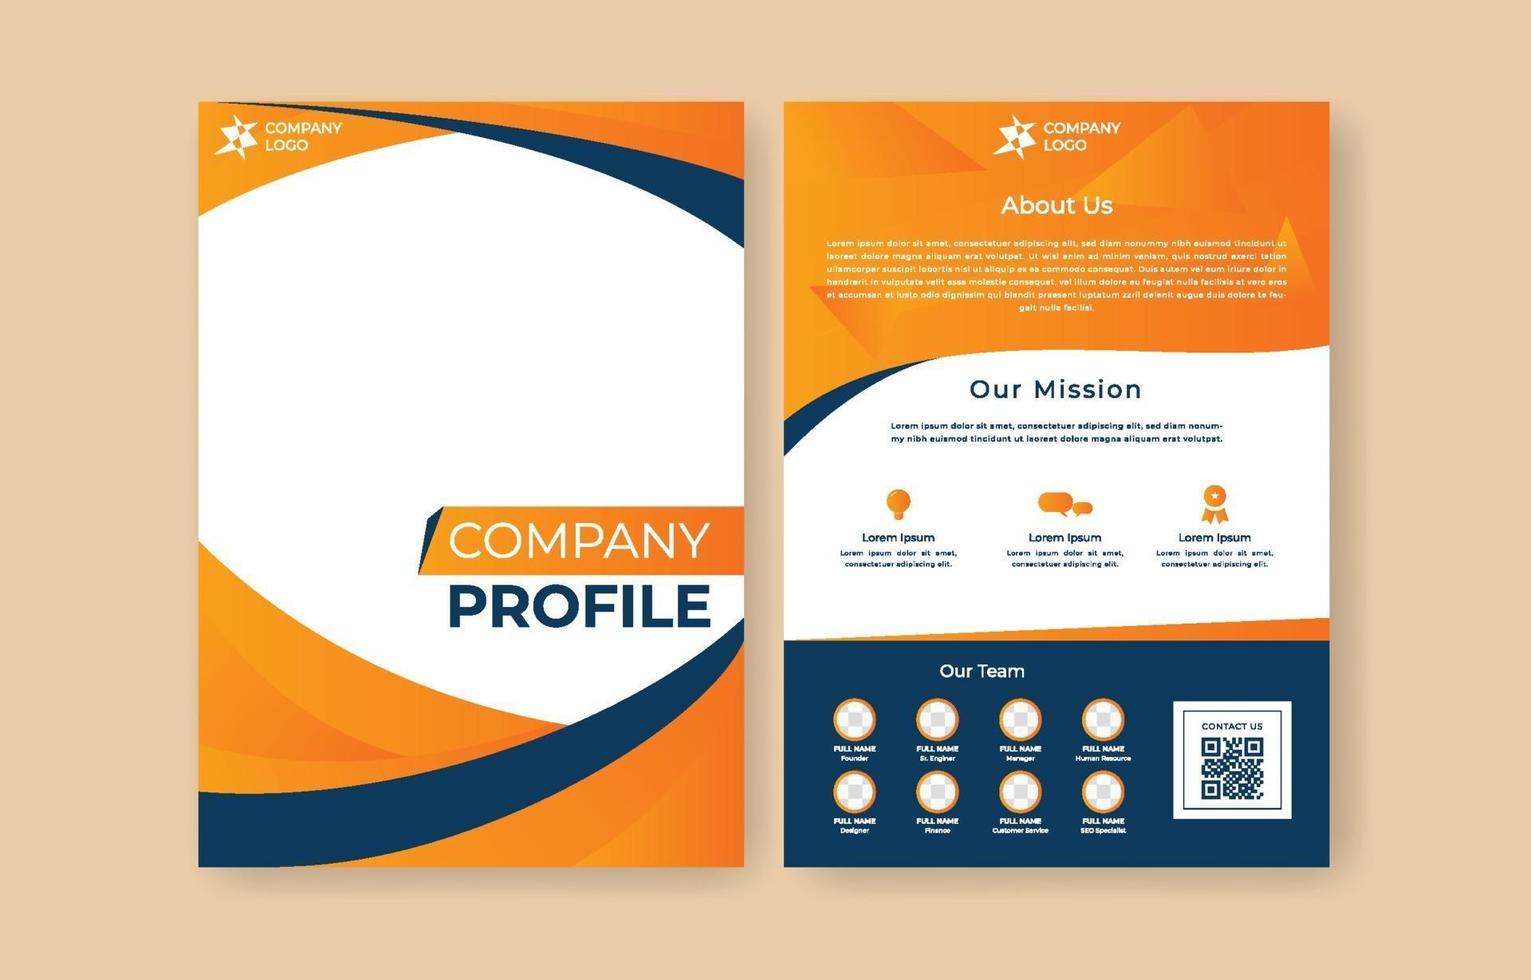 Firmenprofil Flyer Vorlage in Orange und Dunkelblau vektor